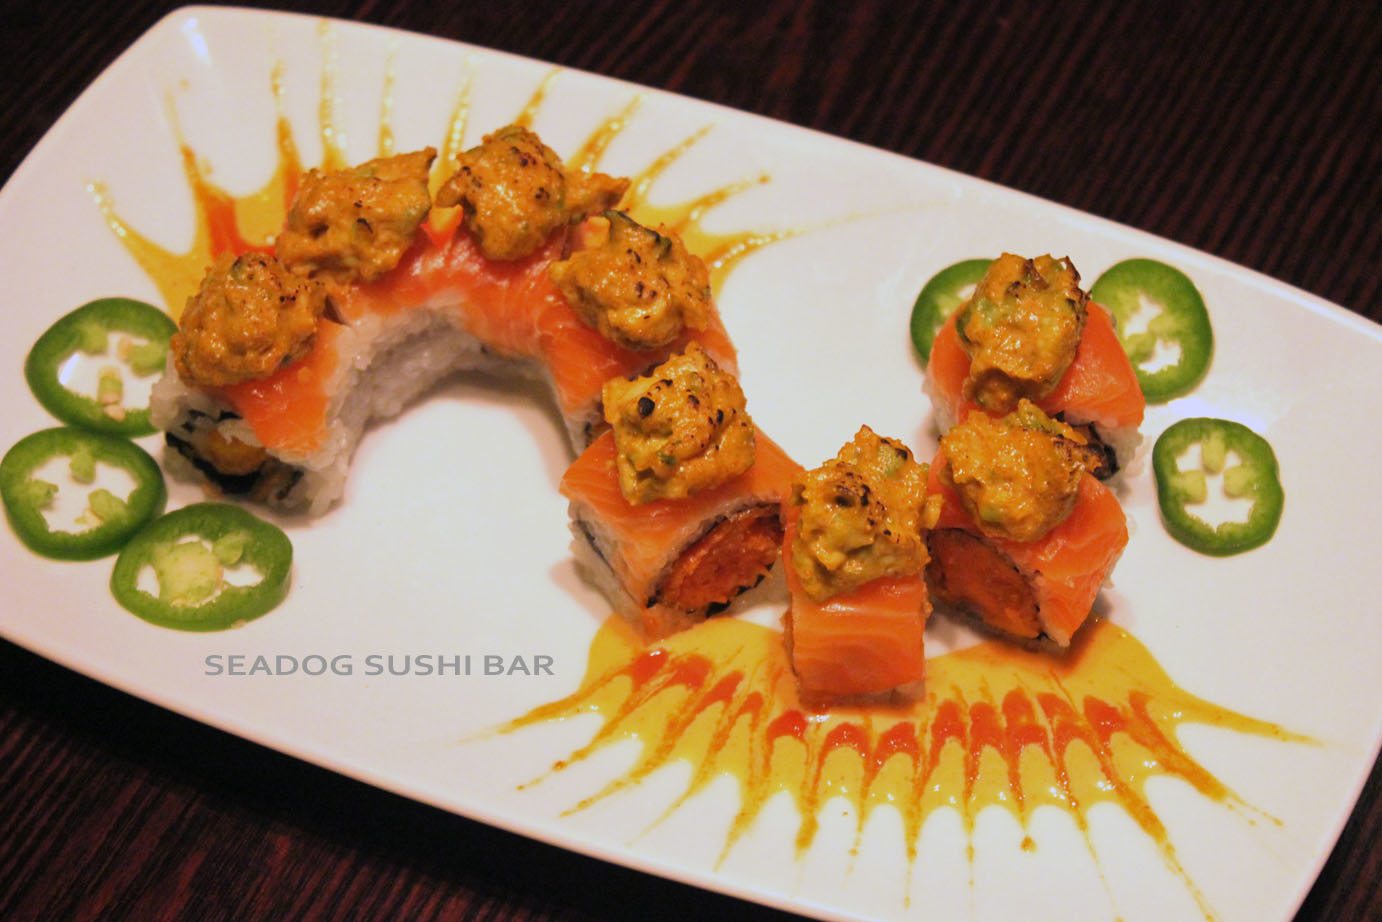 Seadog sushi bar Photo